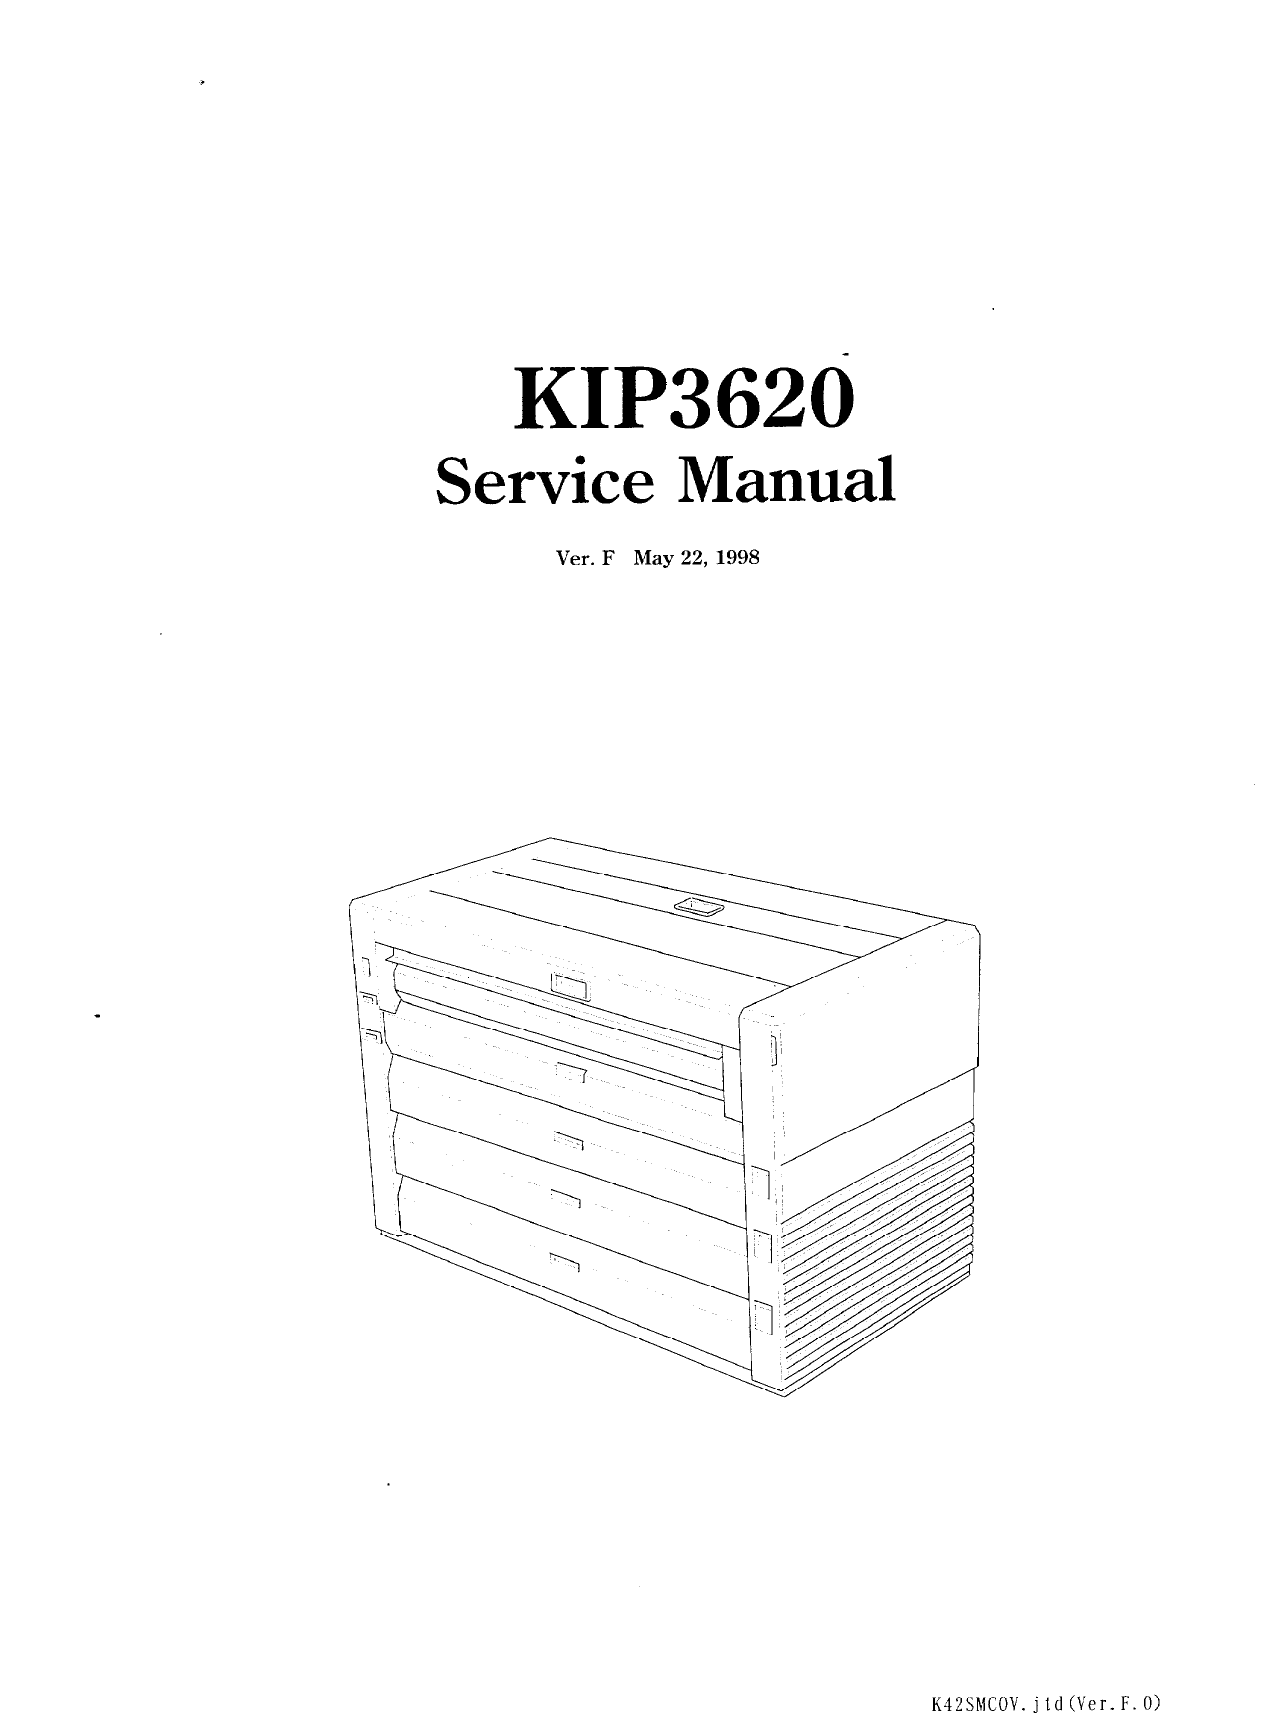 KIP 3620 K-42 Parts and Service Manual-1